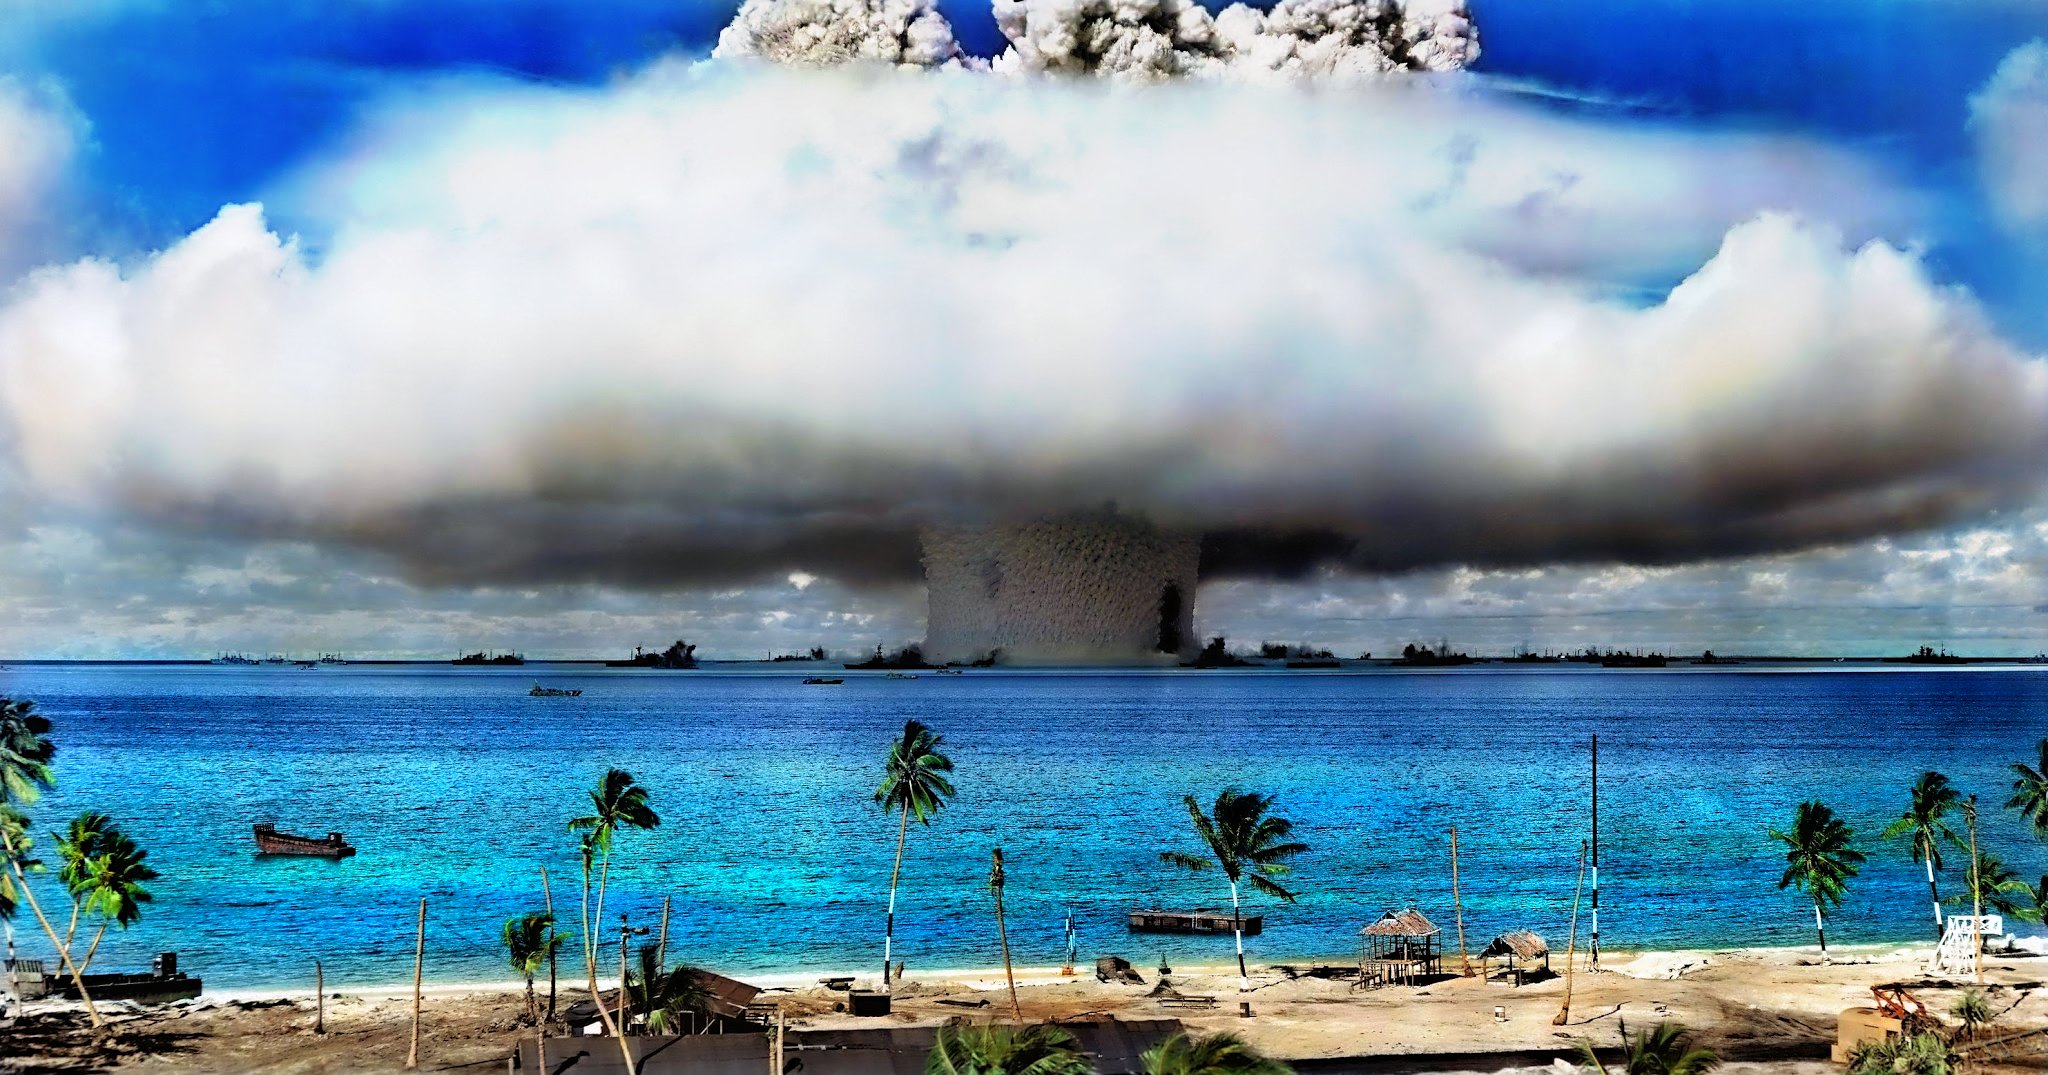 539049 descargar imagen militar, explosión, atolón, bomba: fondos de pantalla y protectores de pantalla gratis